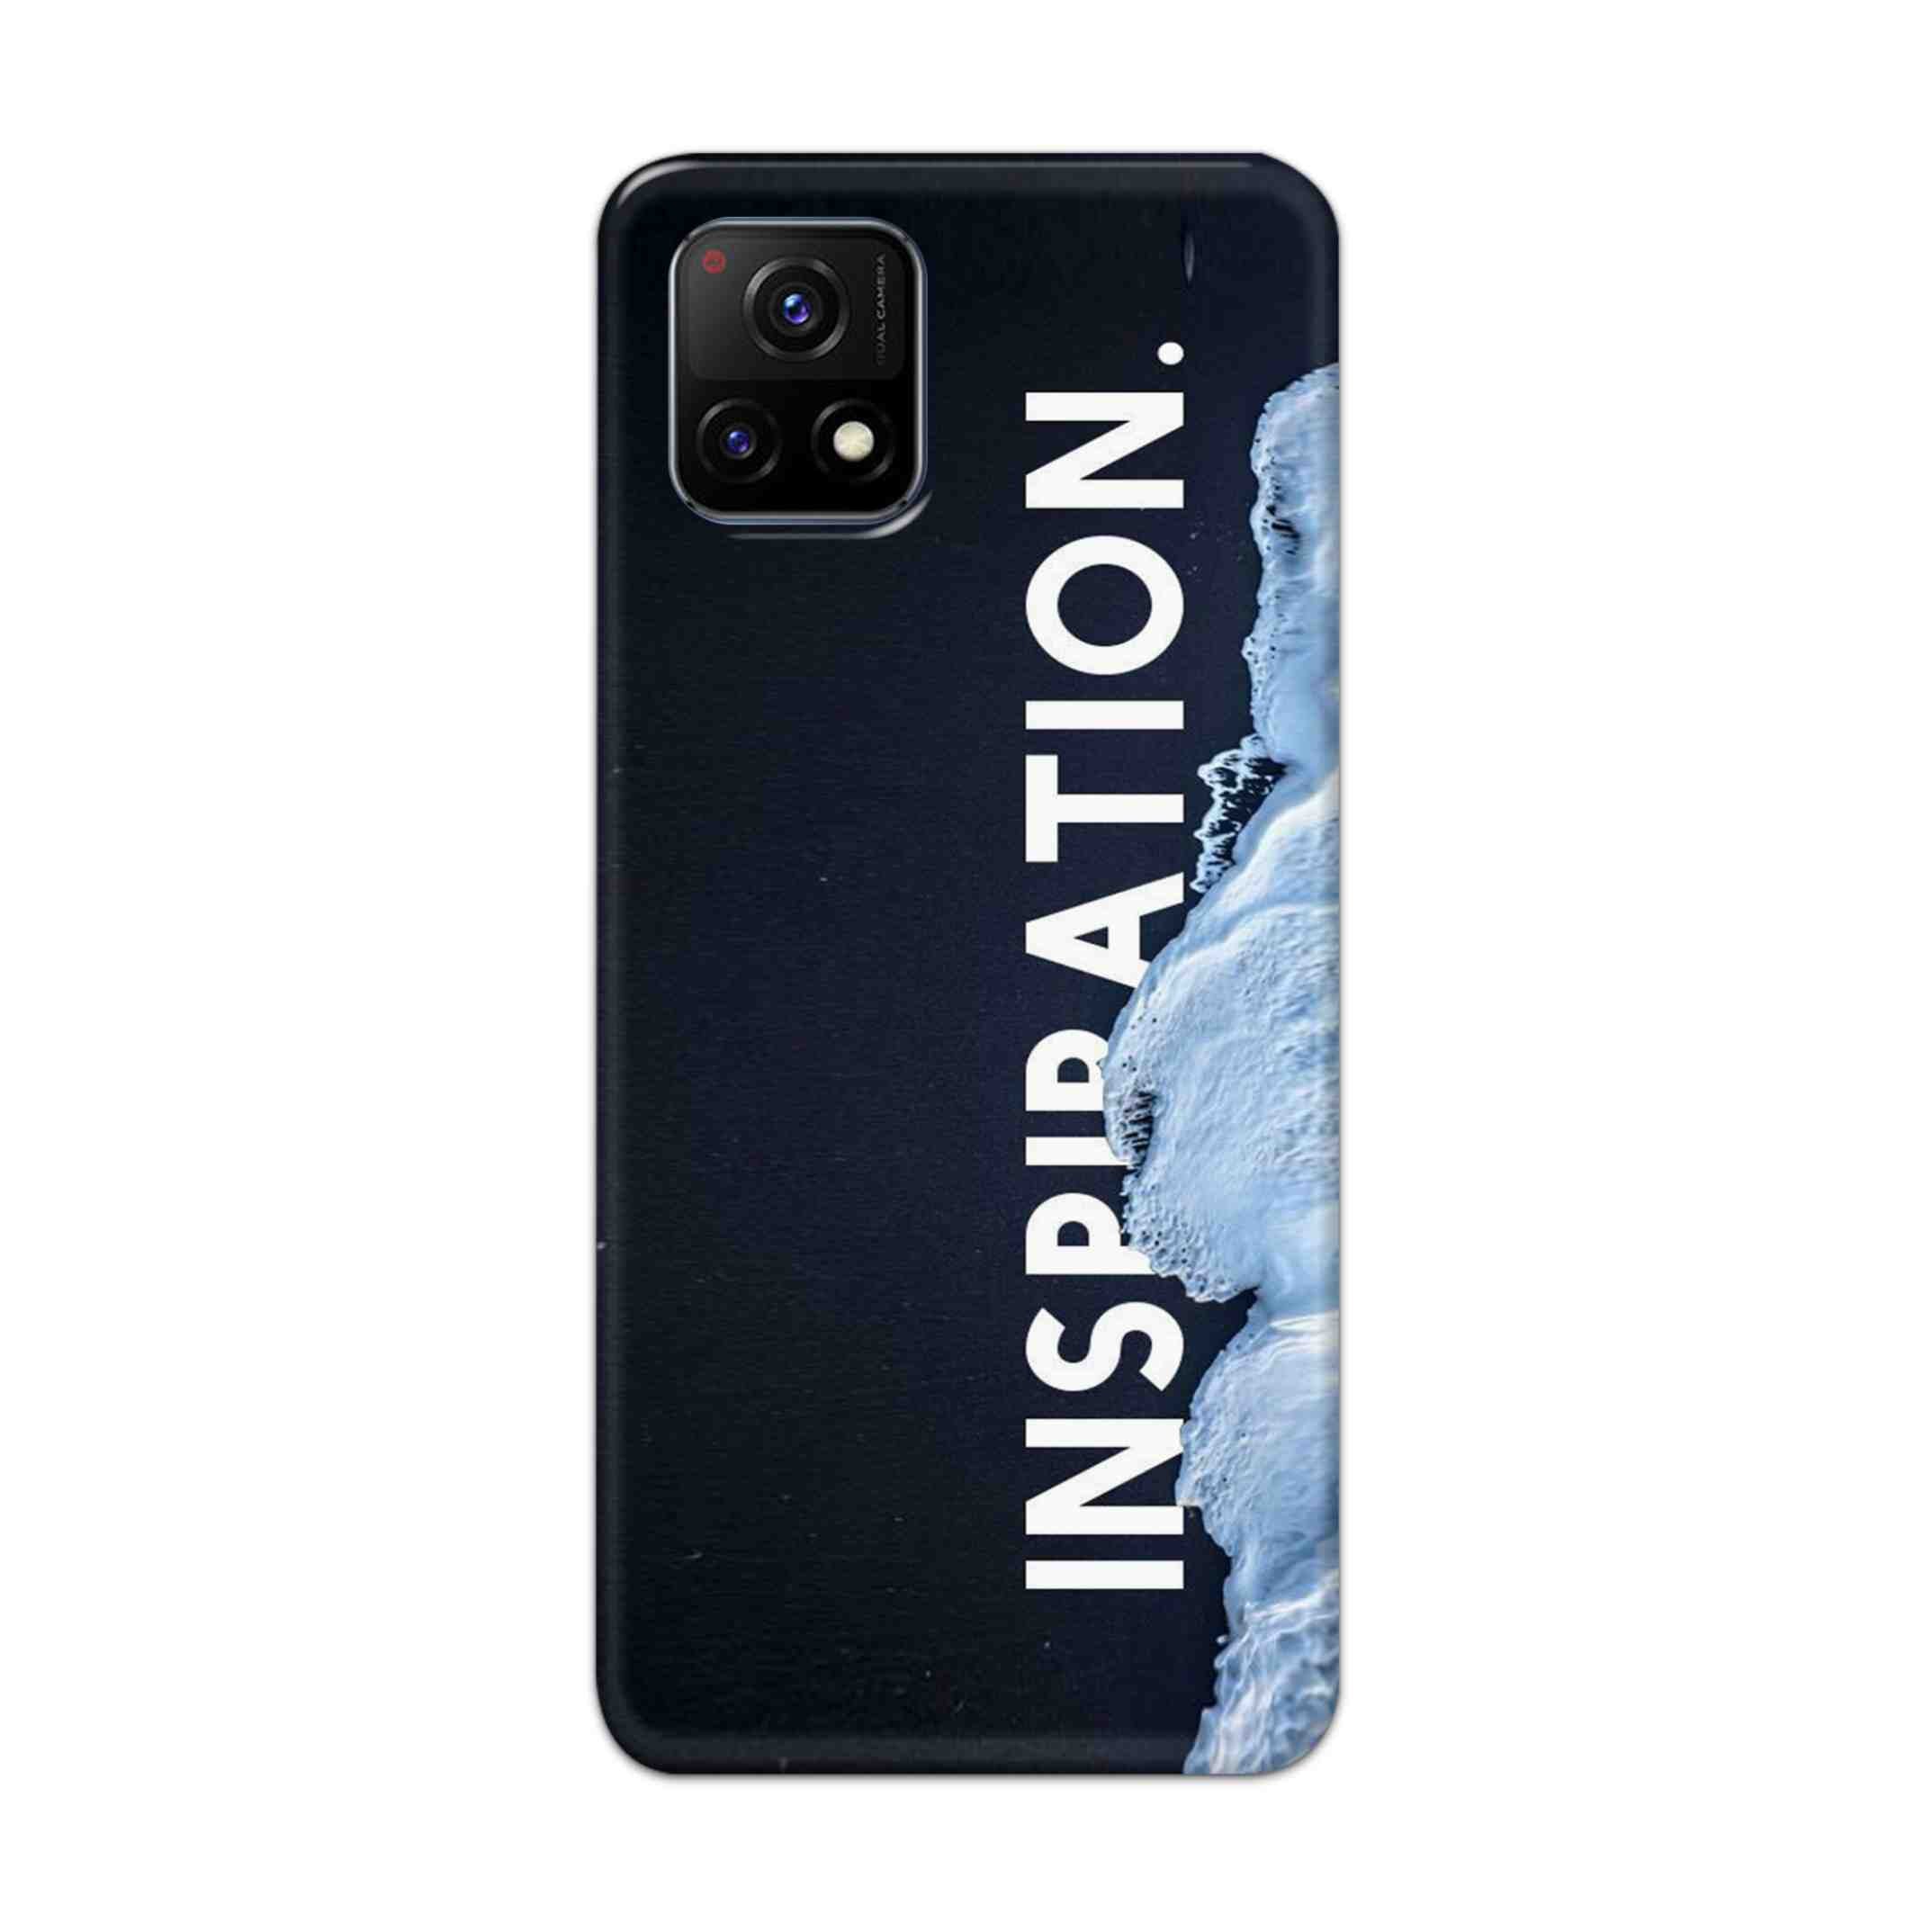 Buy Inspiration Hard Back Mobile Phone Case Cover For Vivo Y72 5G Online